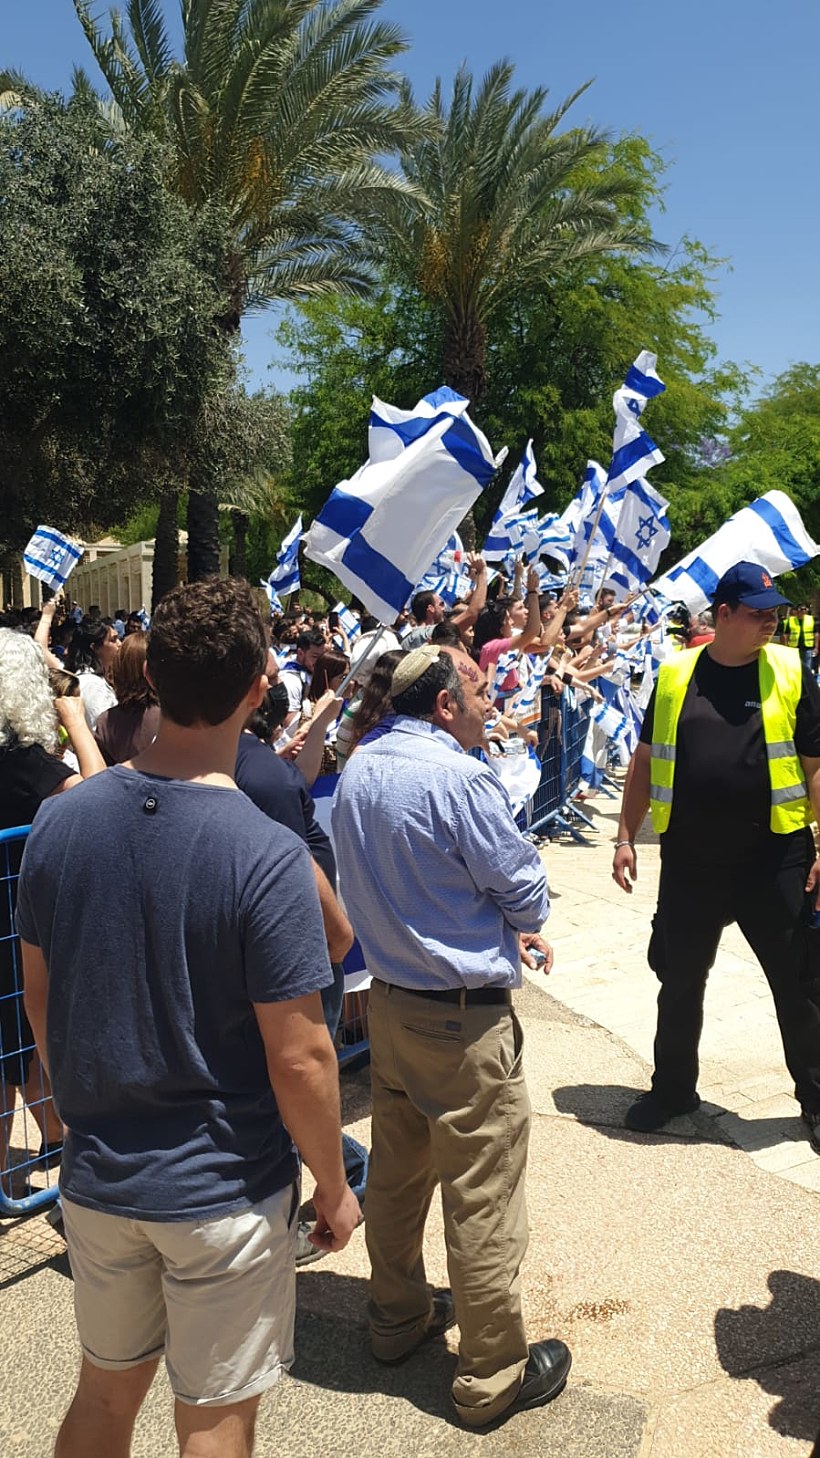 העצרת המקבילה לציון יום הנכבה שנערכה באוניברסיטת בן גוריון, בה הניפו דגלי ישראל